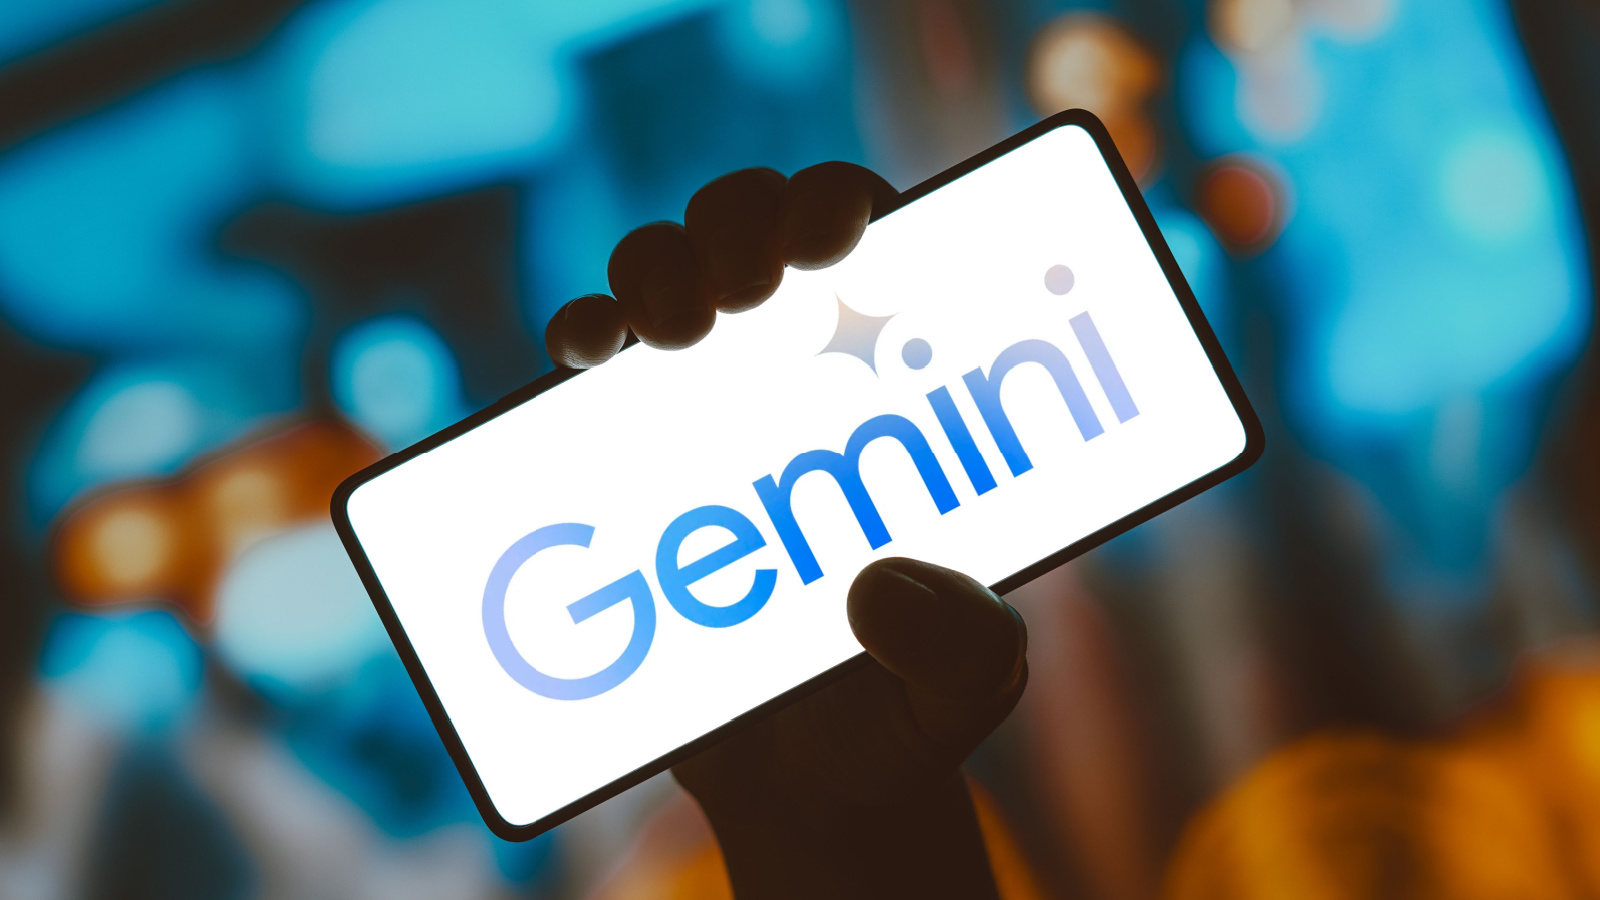 Gemini : Google prévoit de relancer son IA générative d'images dans les prochaines semaines